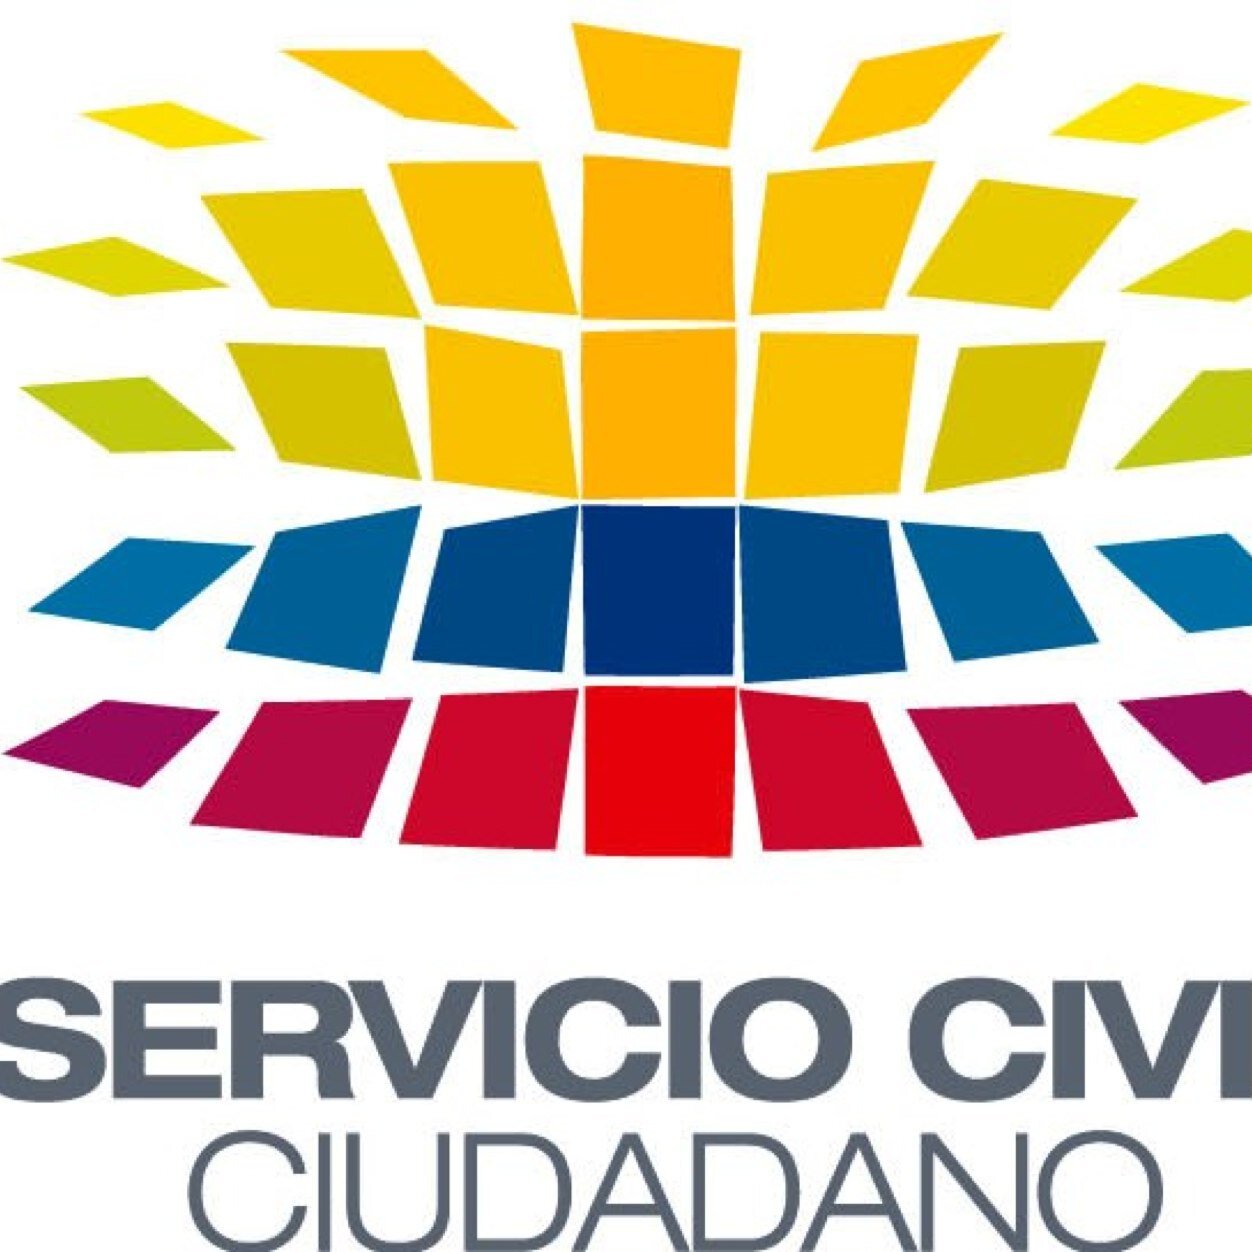 Cuenta Oficial de Twitter del Servicio Civil Ciudadano